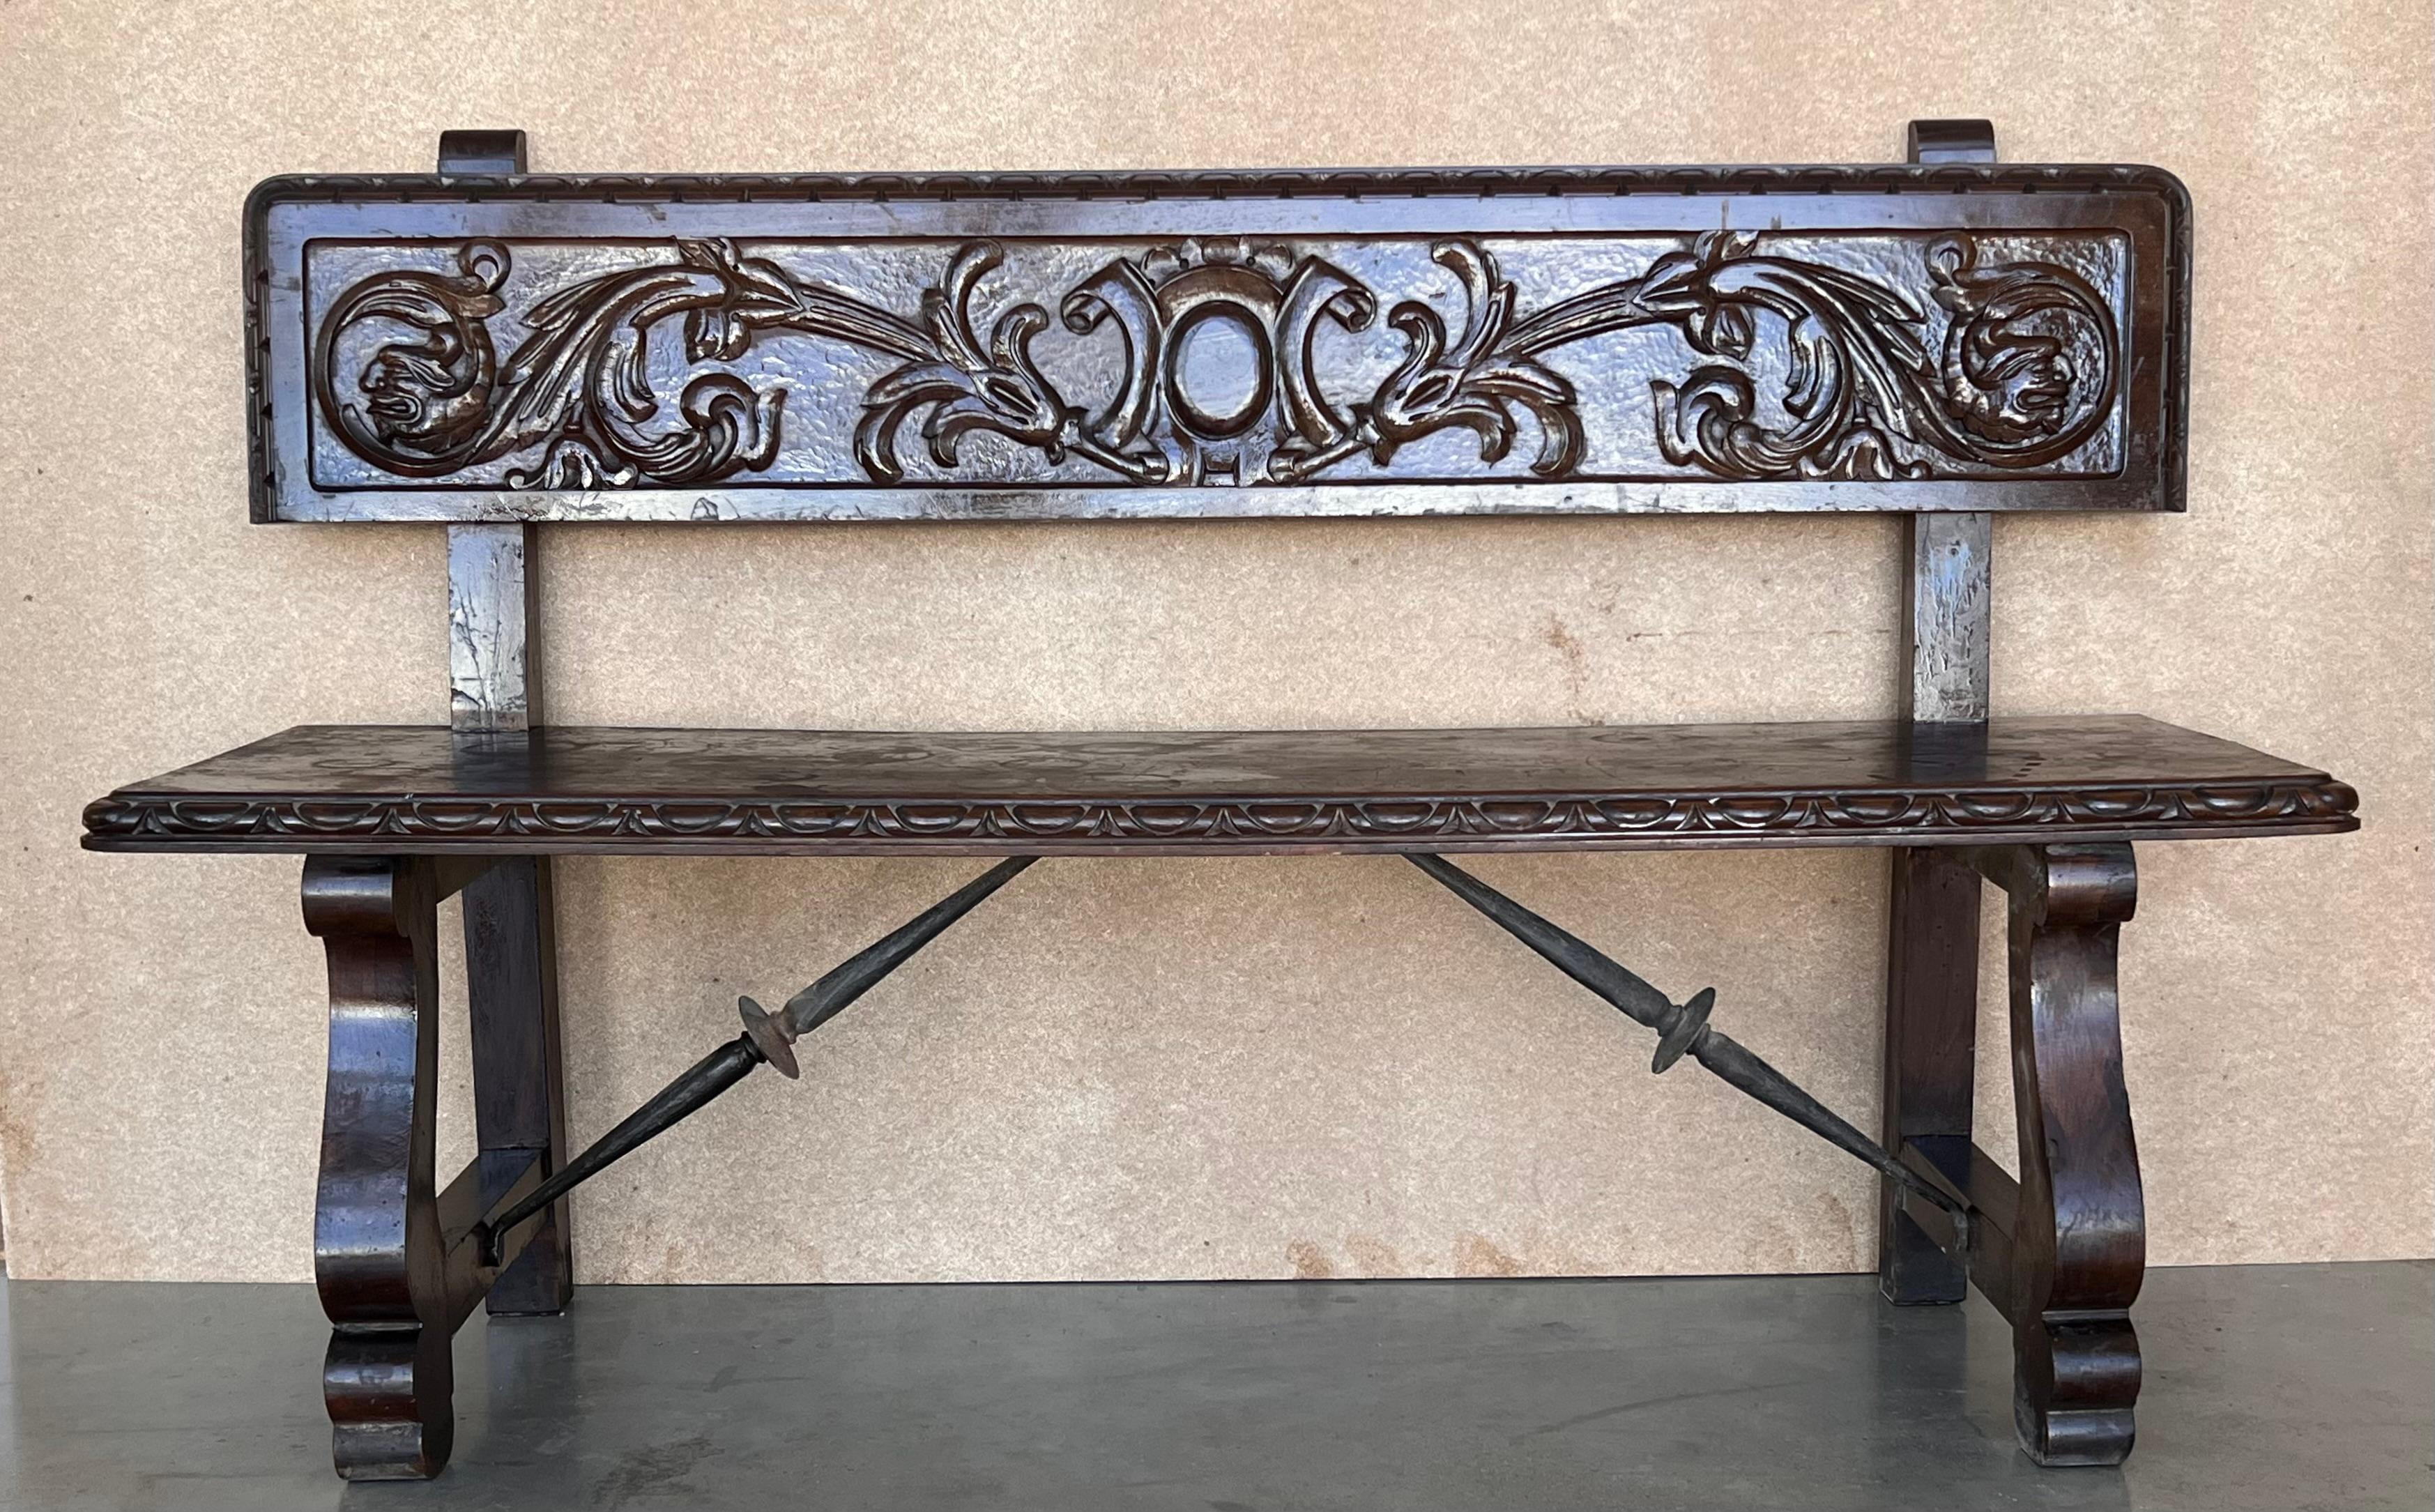 Stunning antique Spanish Renaissance walnut bench, called 